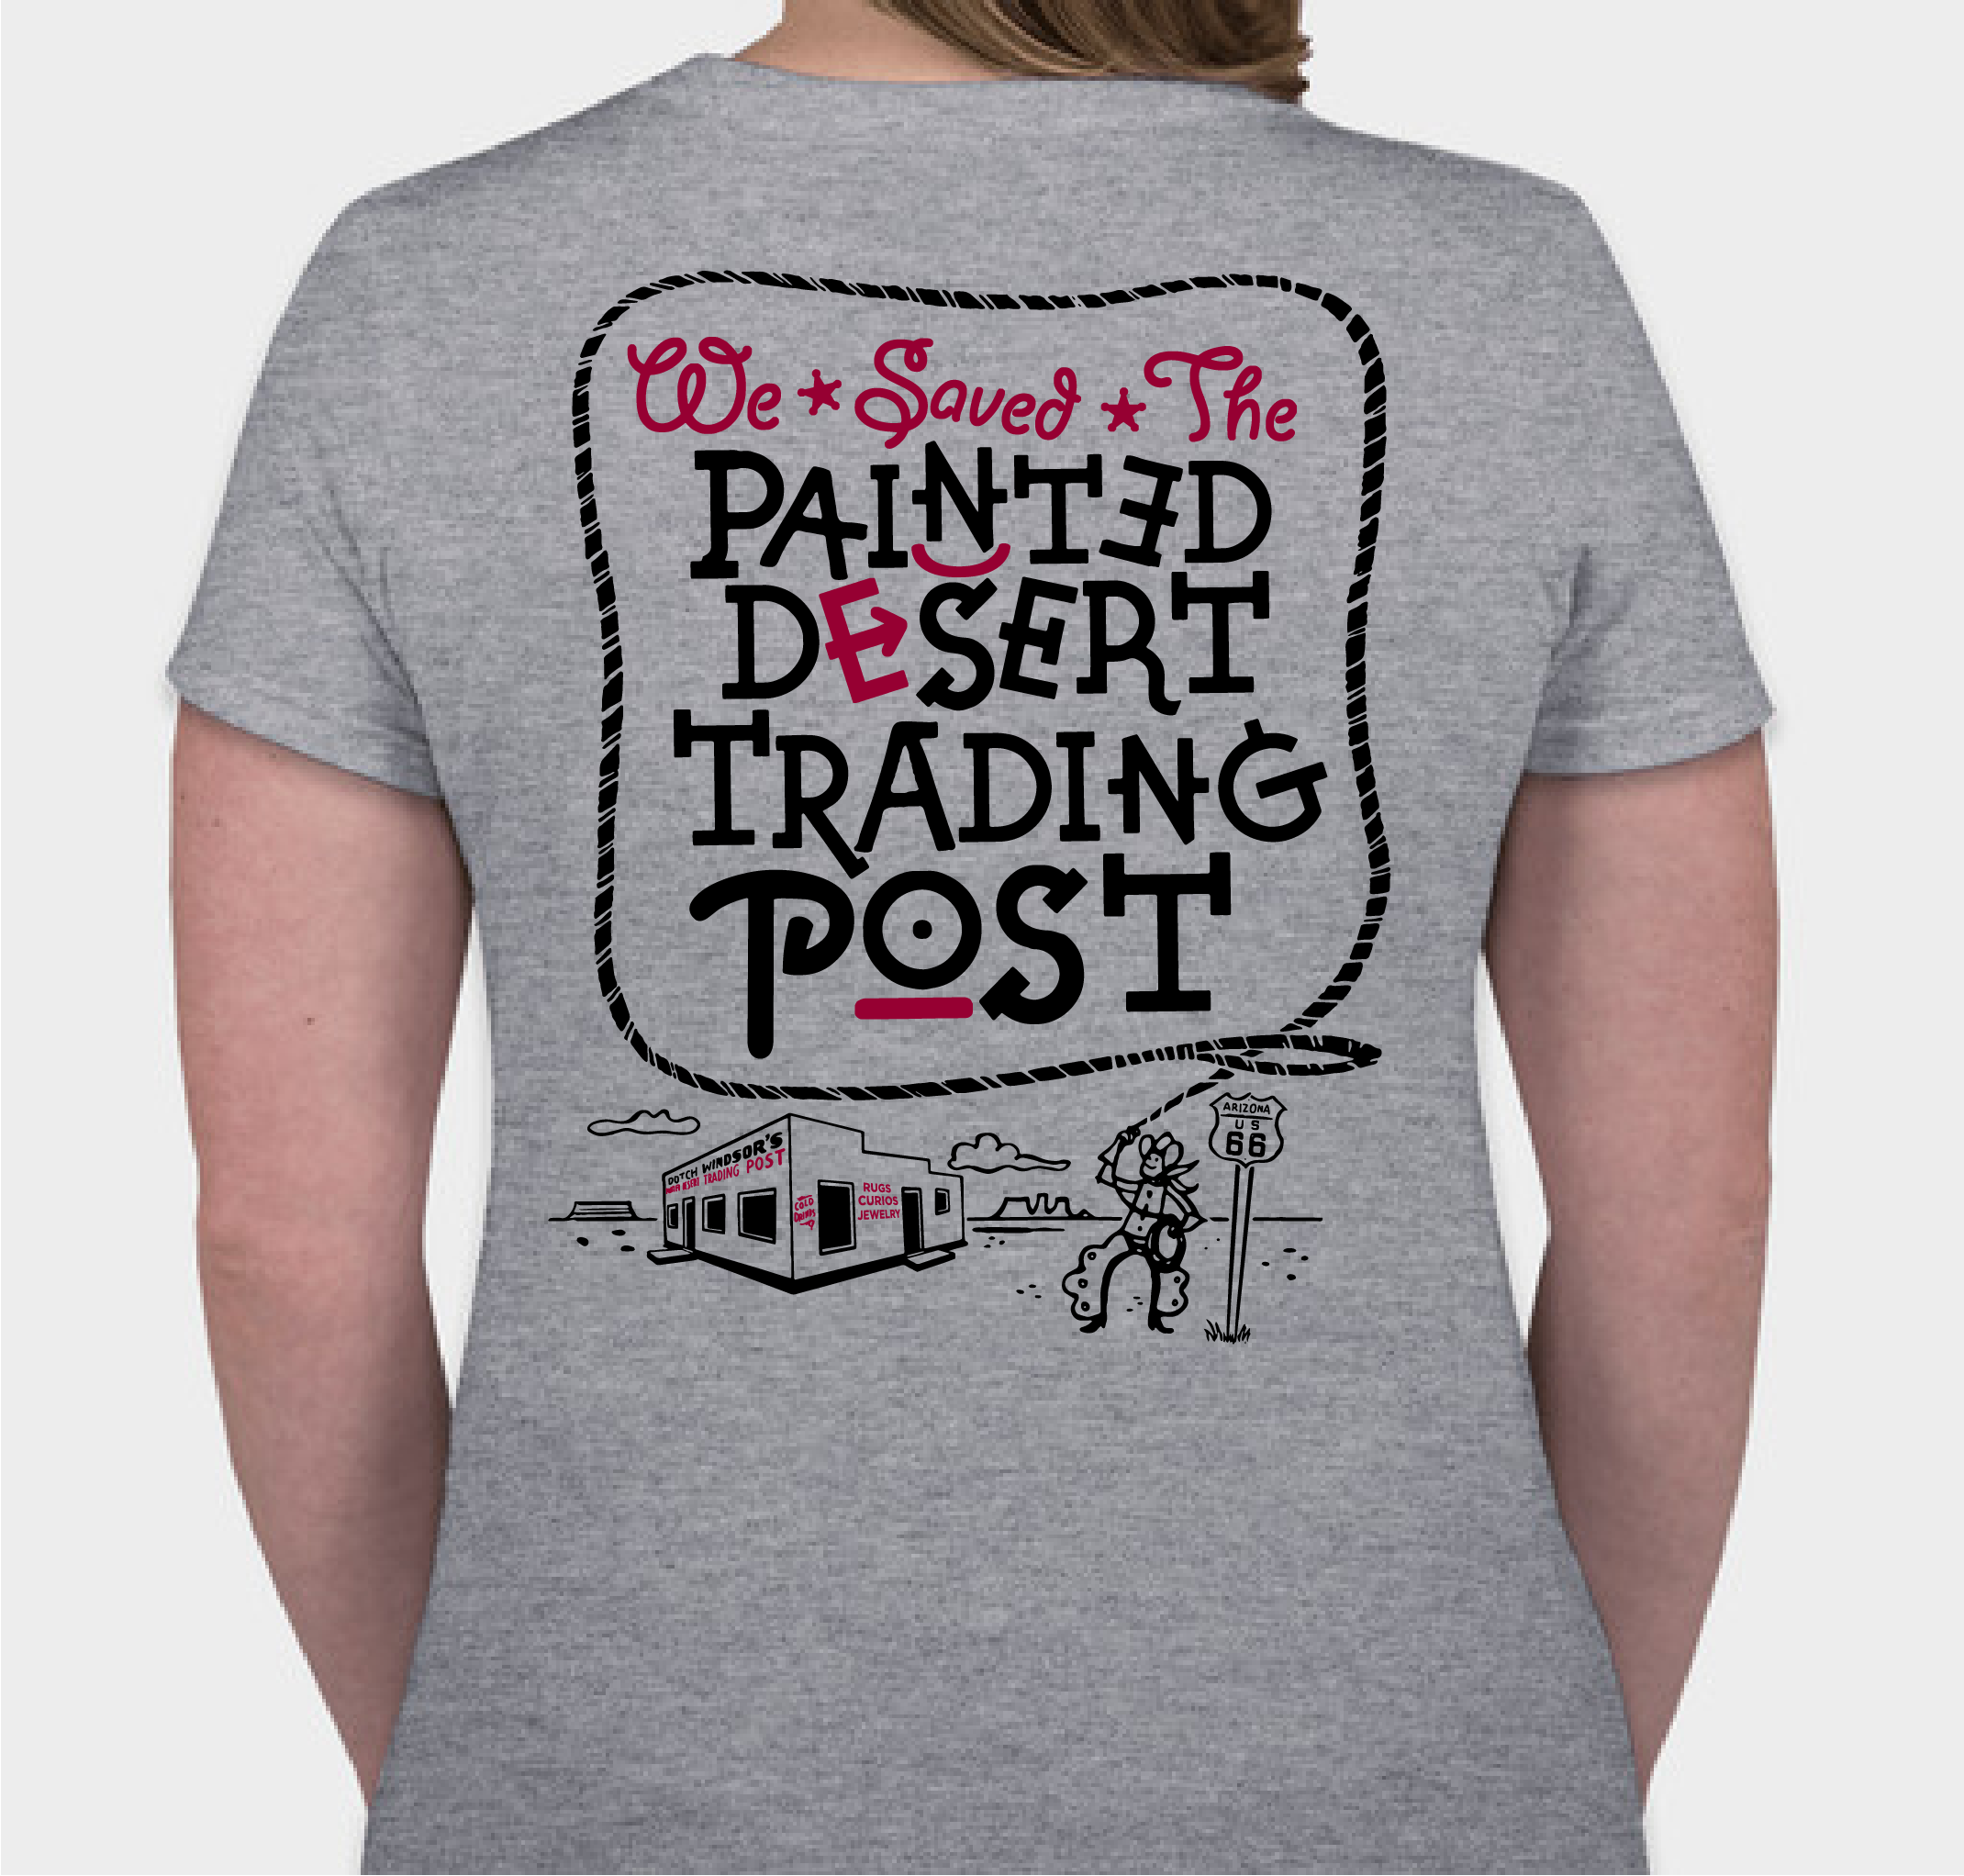 PAINTED DESERT TRADING POST - MAY 2021 Fundraiser - unisex shirt design - back